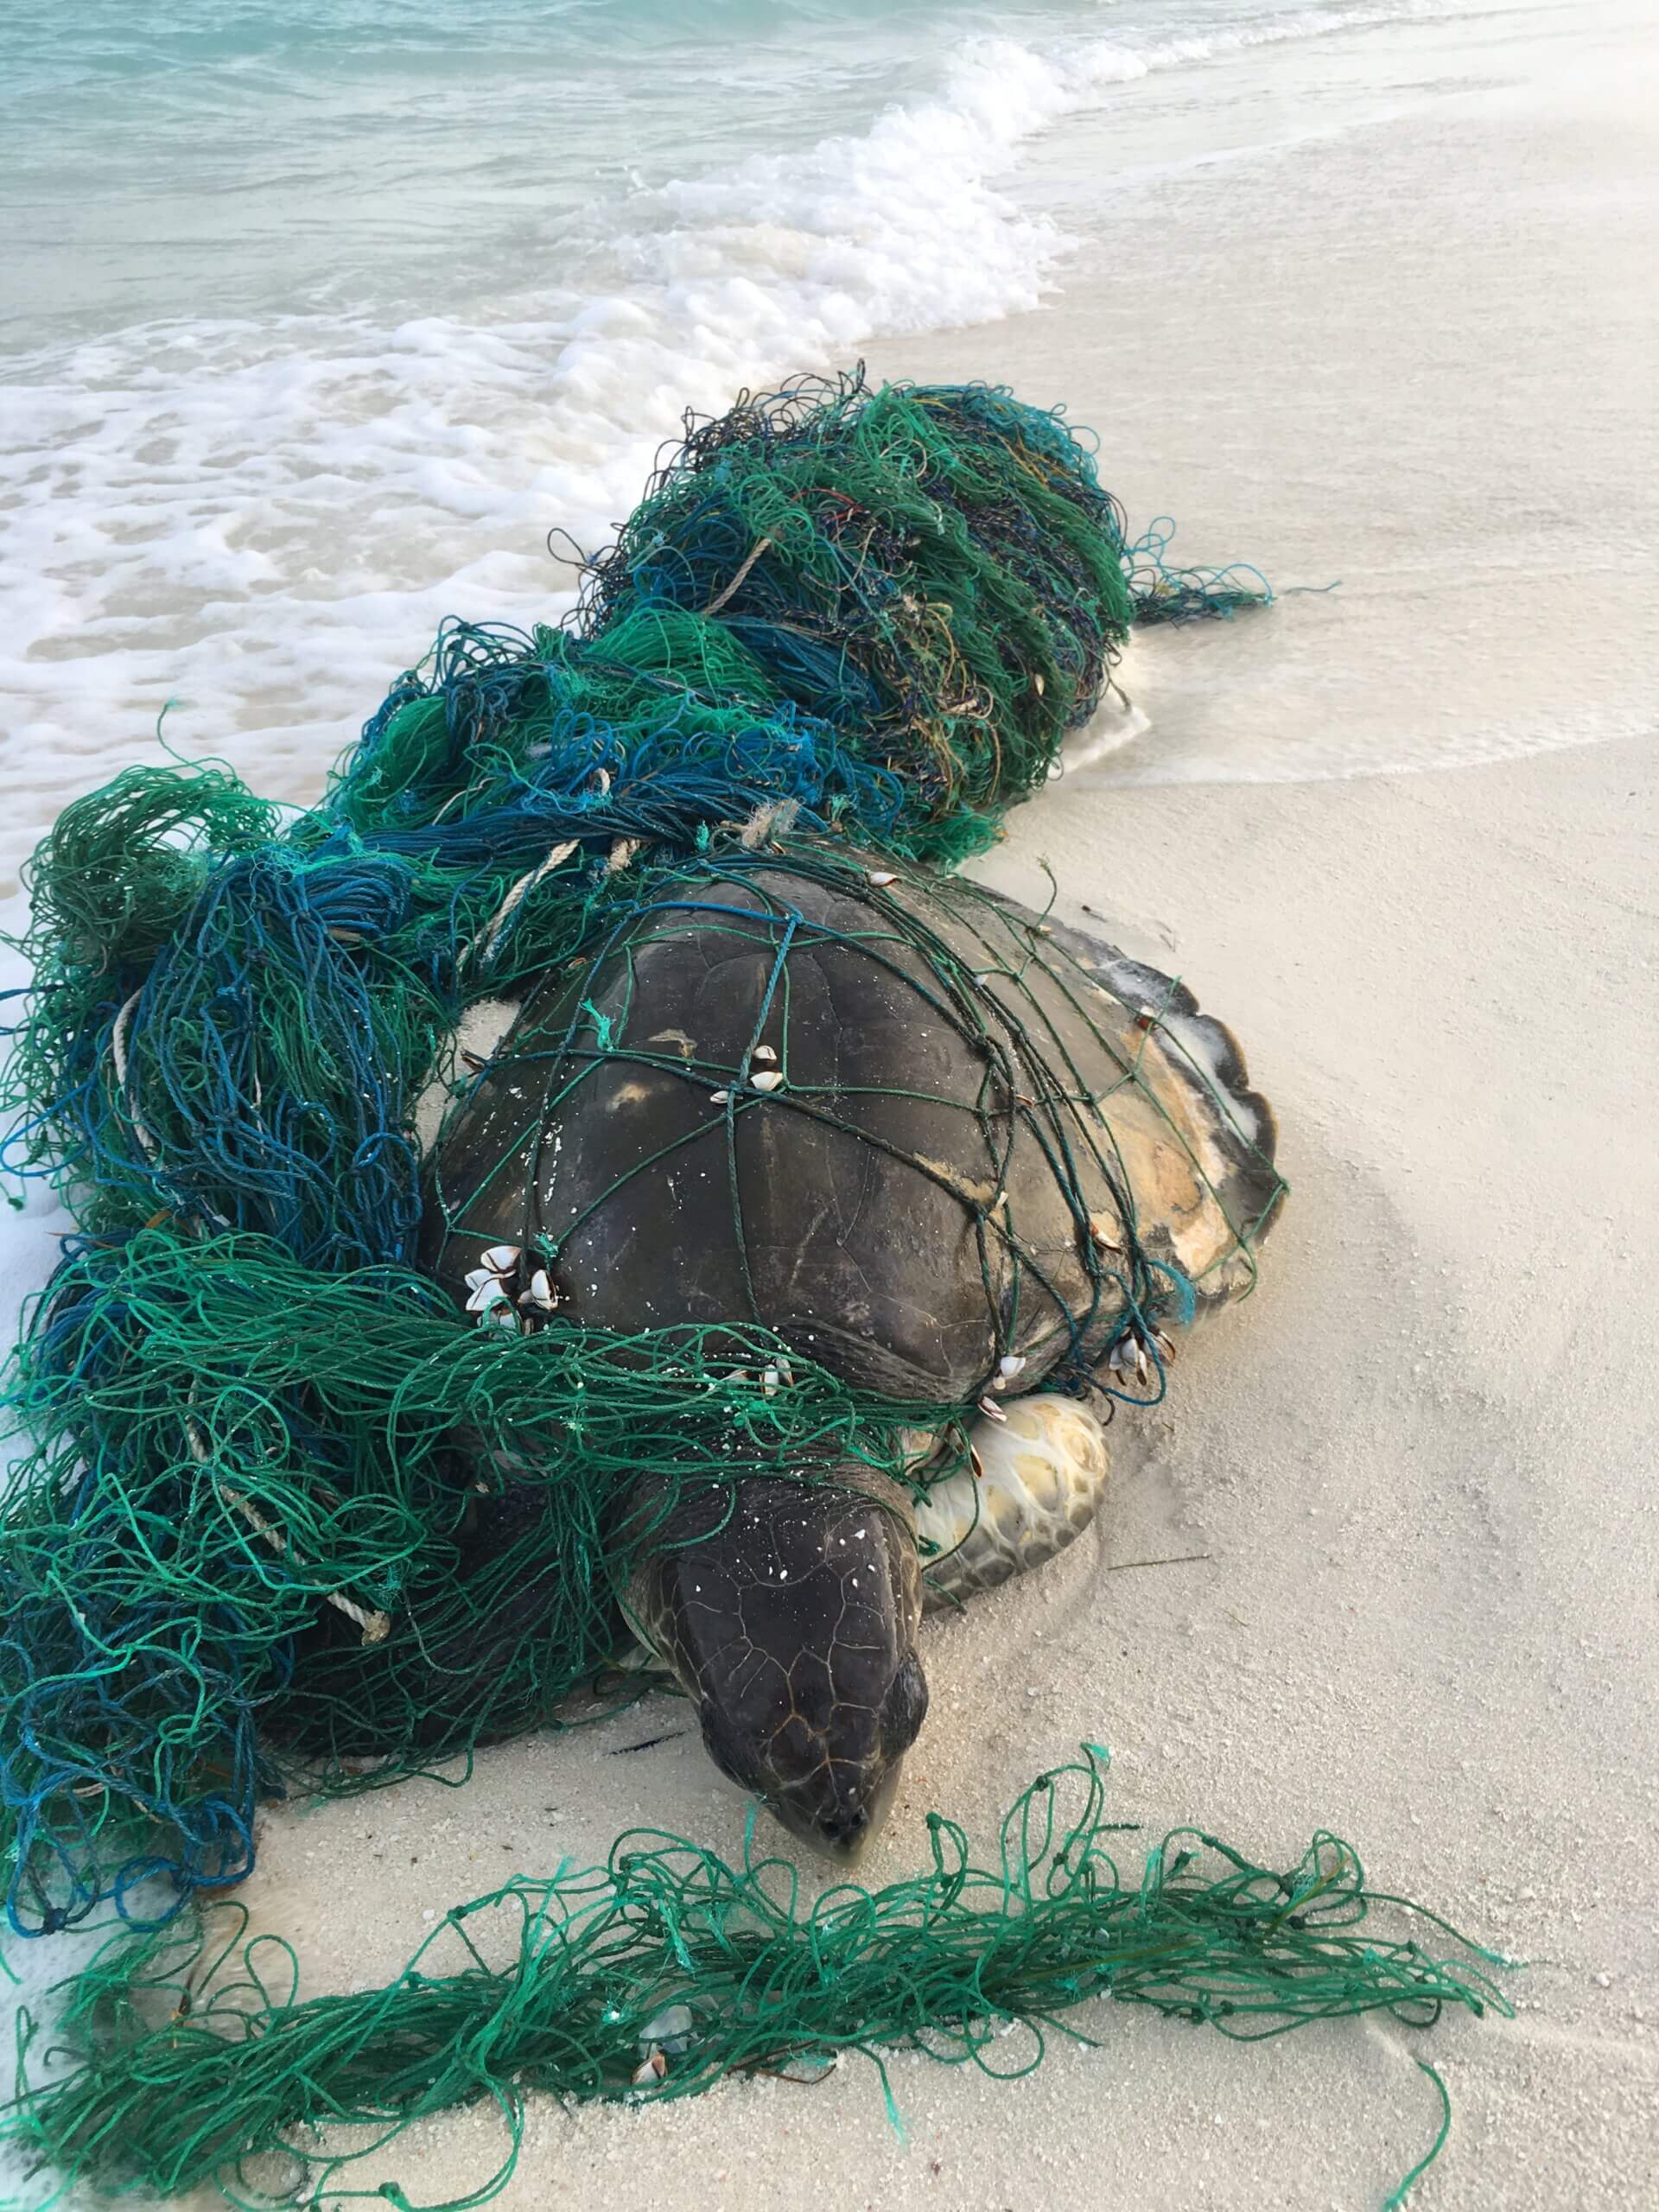 Plastik: Meeresskröte am Strand verwickelt in ein Fischernetz